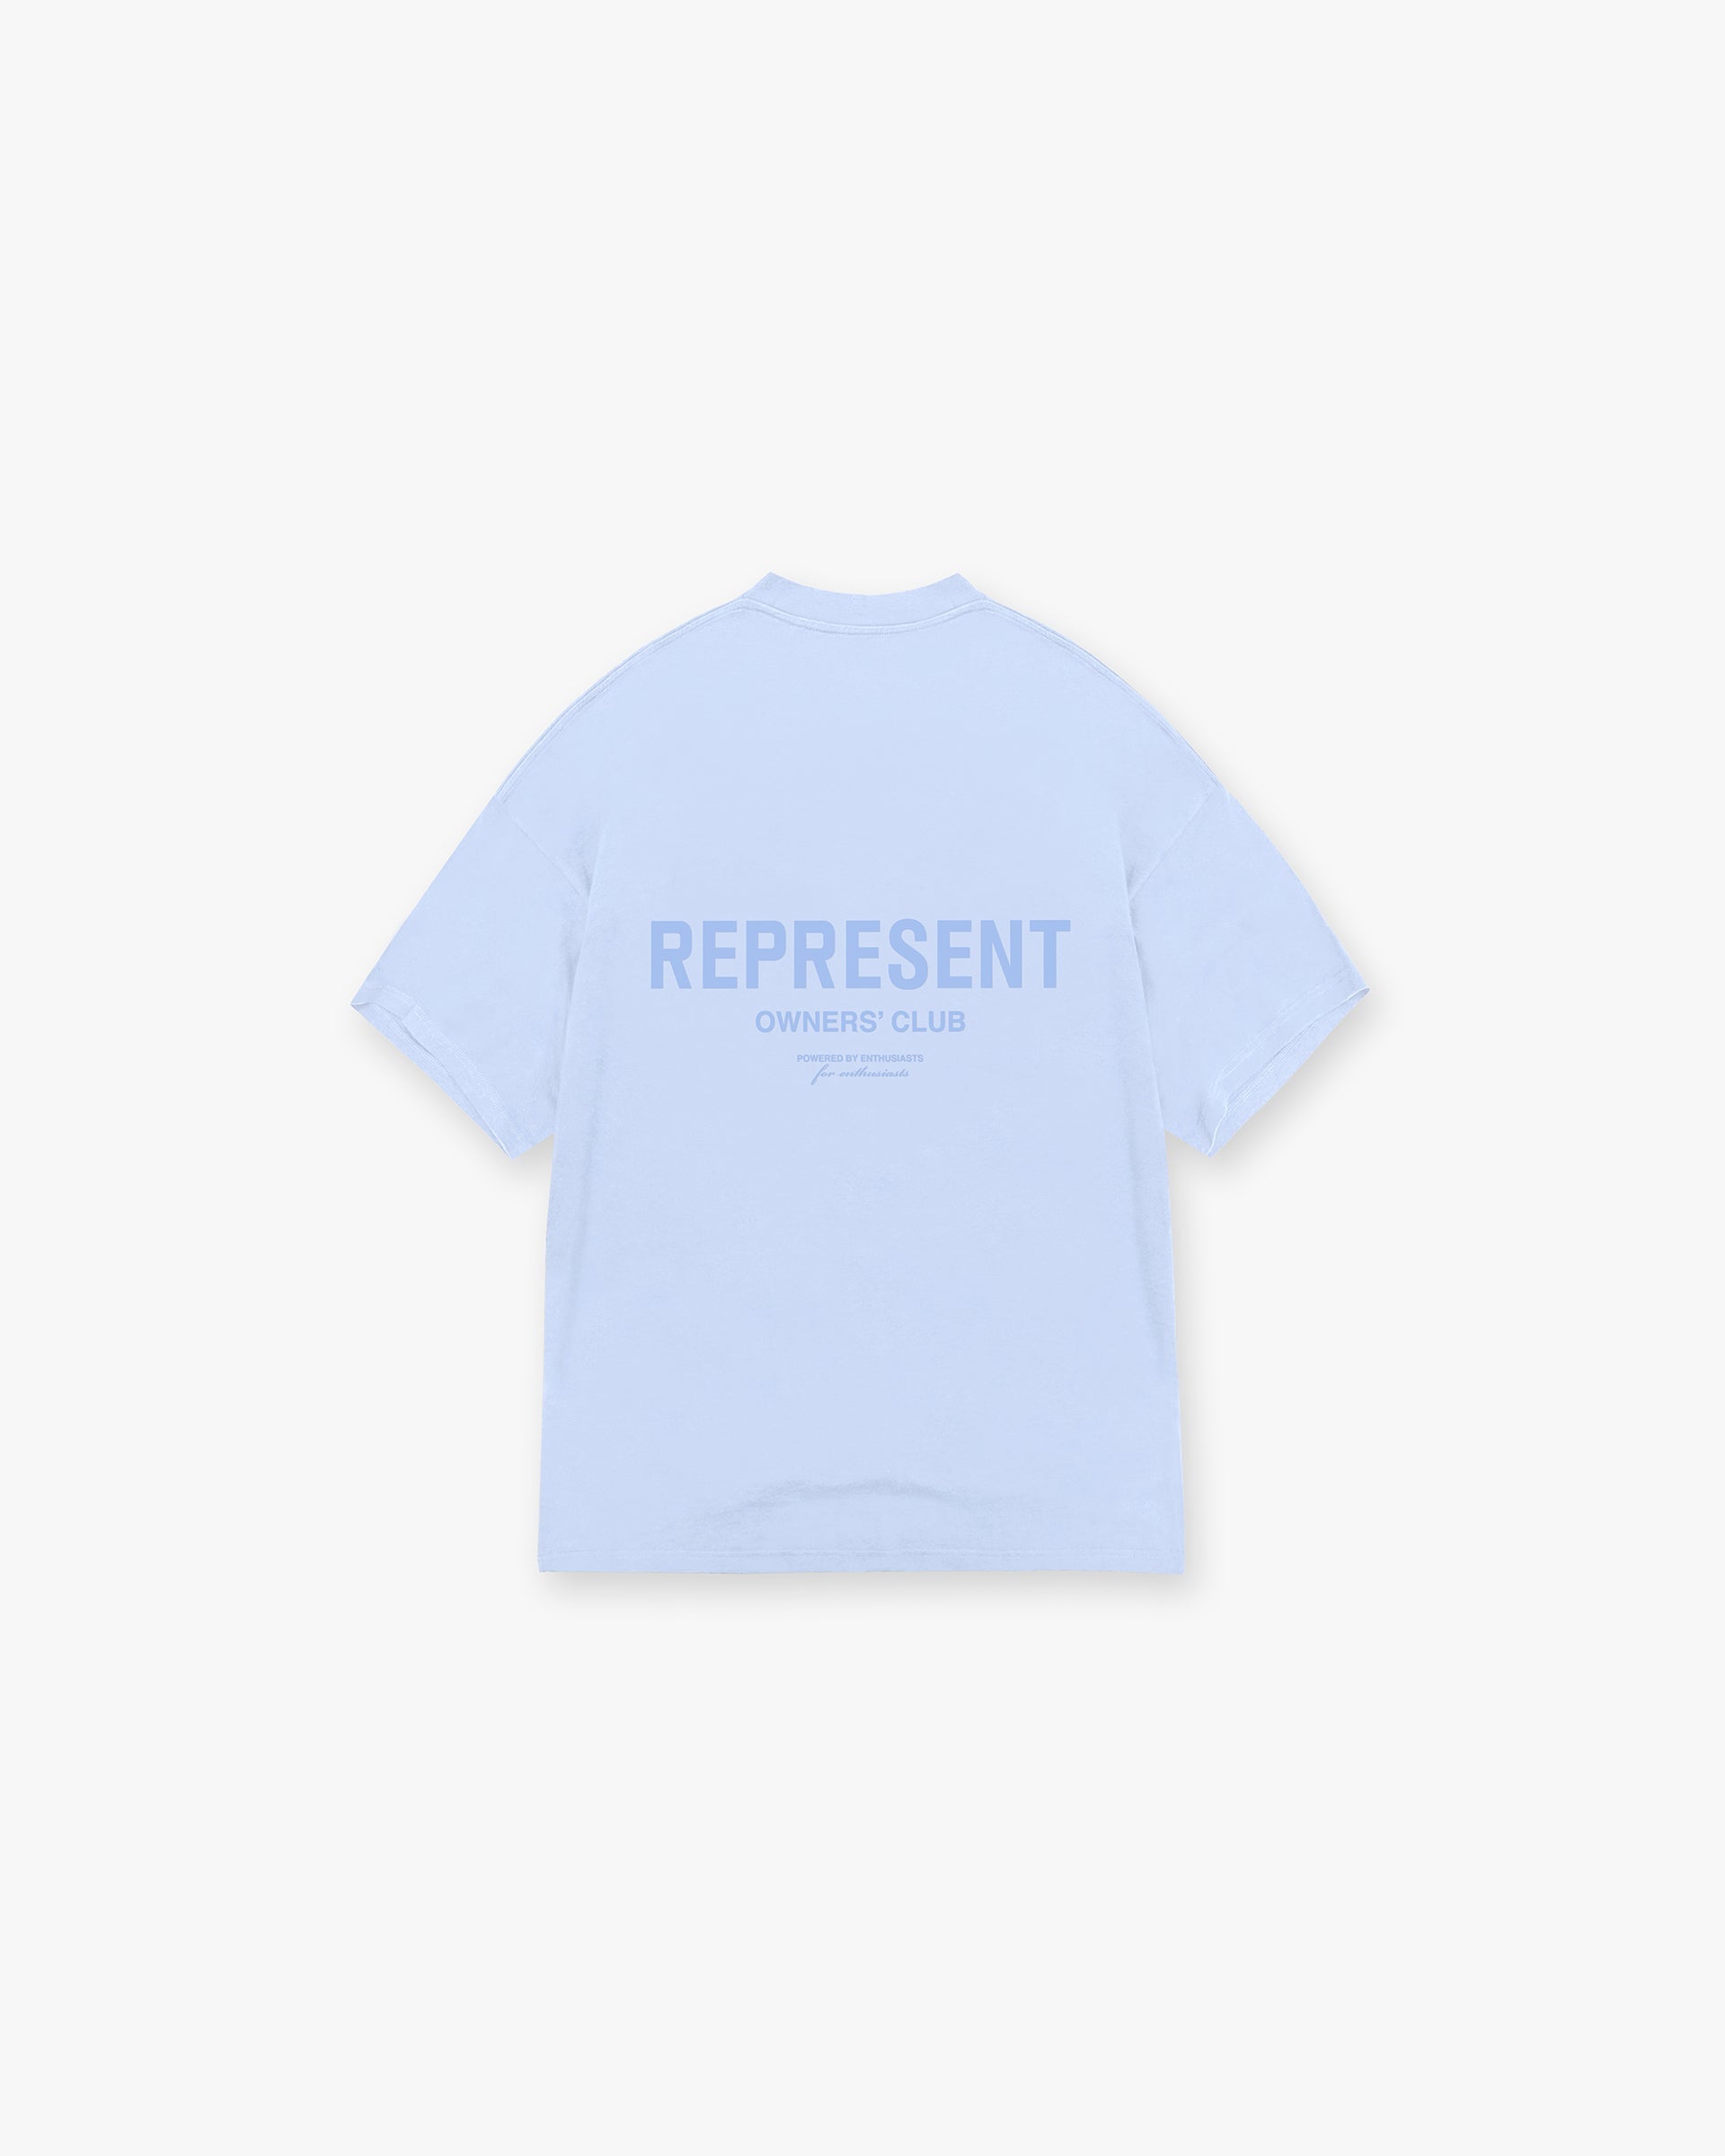 Represent Owners Club T-Shirt - Vista Blue